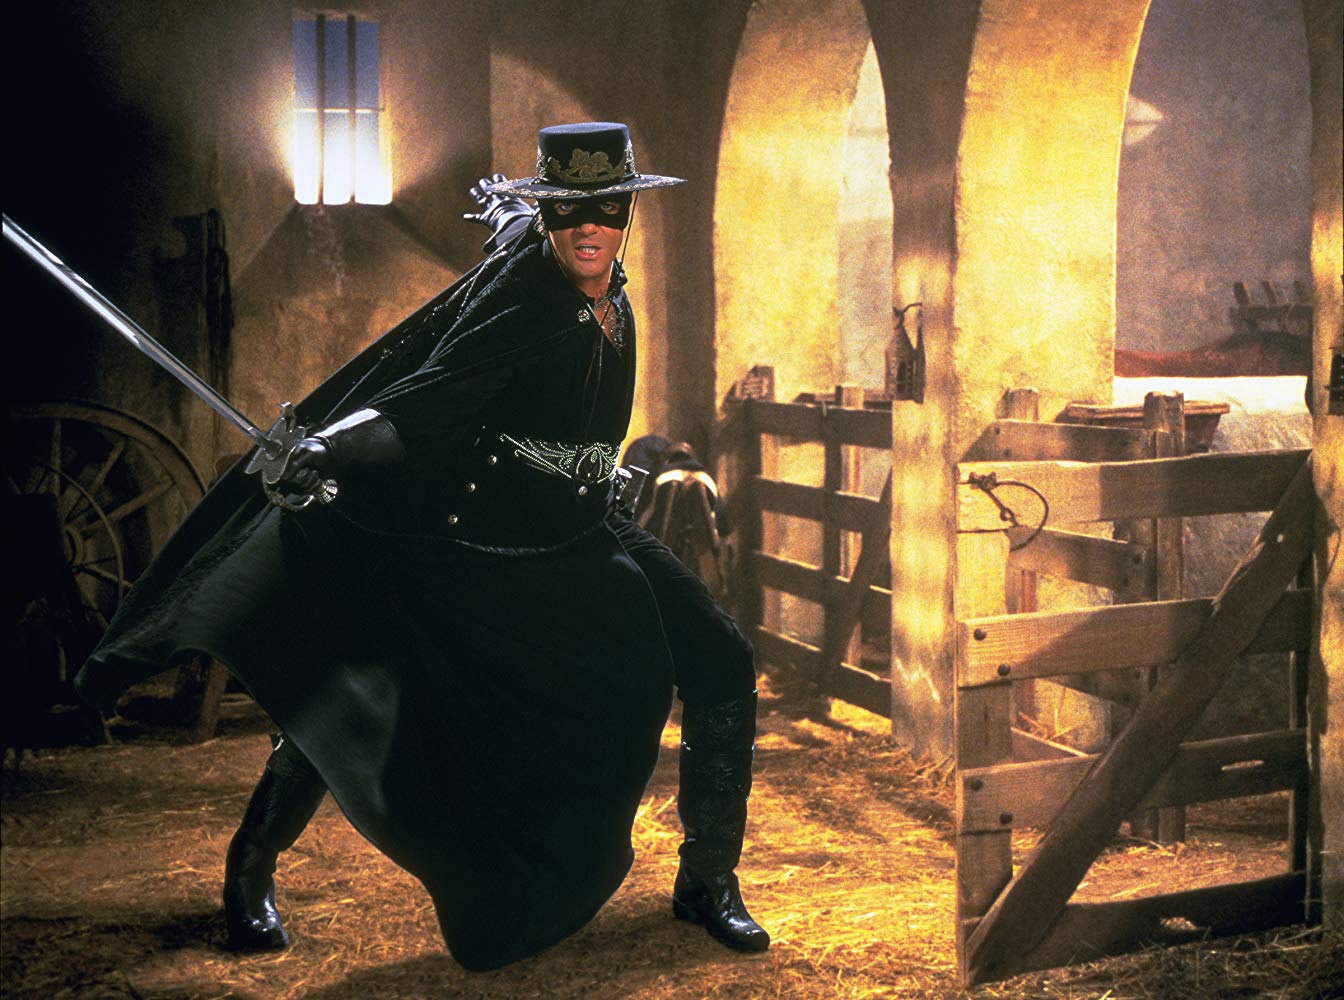 Canal CW planeja série do Zorro com protagonista feminina e